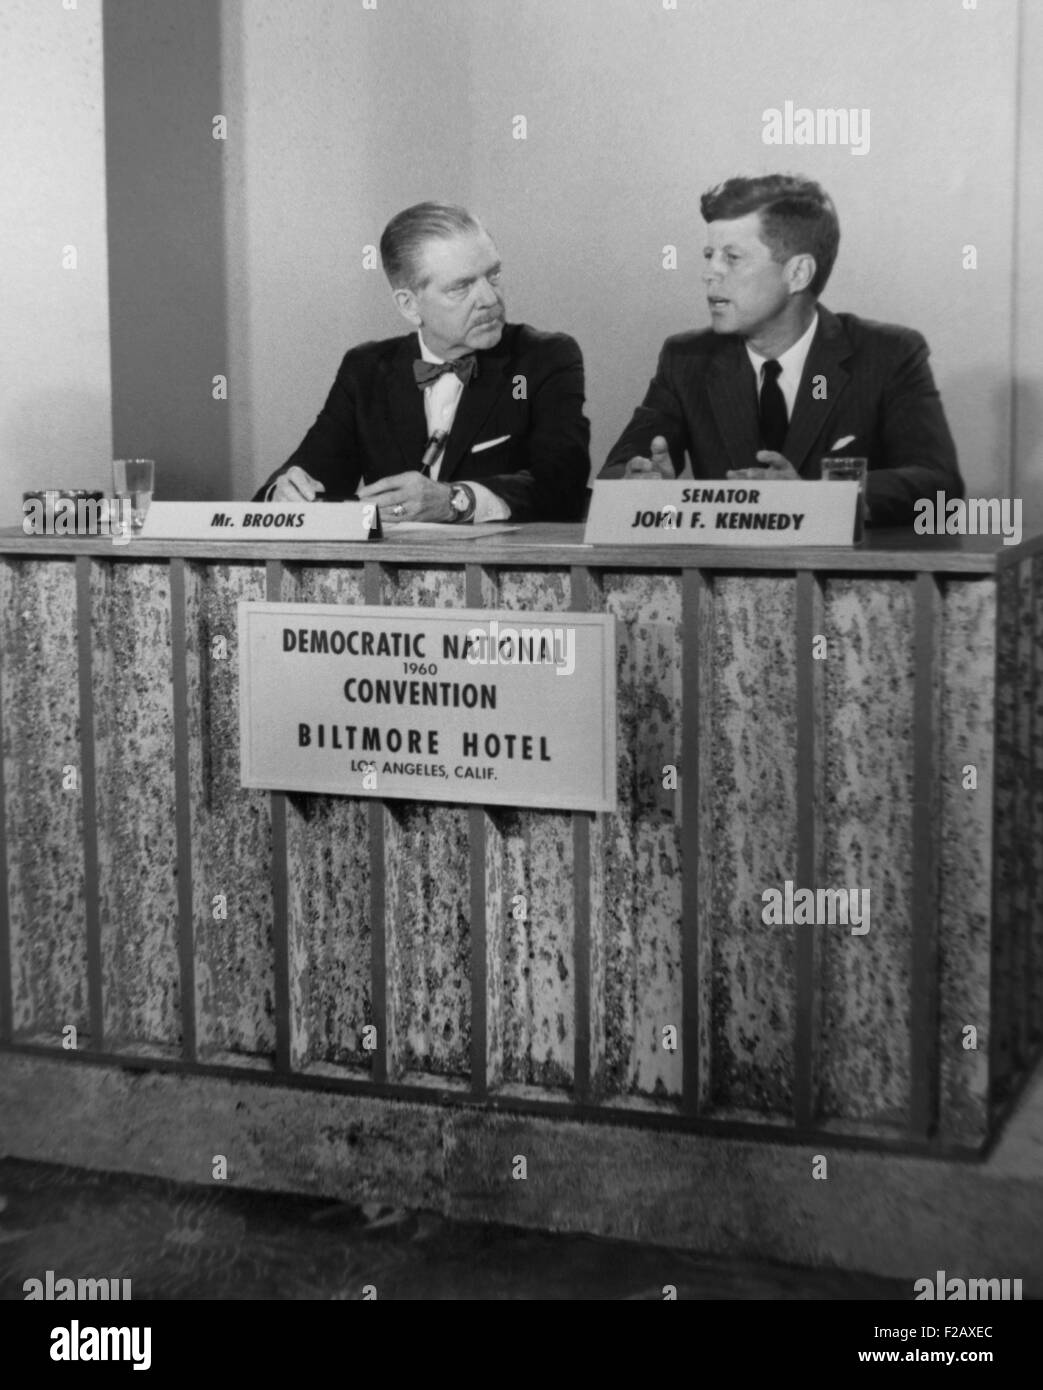 Senator John F. Kennedy im Fernsehen zeigen, MEET THE PRESS. Während der Democratic National Convention in Los Angeles, 11.-17. Juli 1960 wurde er von Ned Brooks interviewt. (BSLOC 2015 2 220) Stockfoto